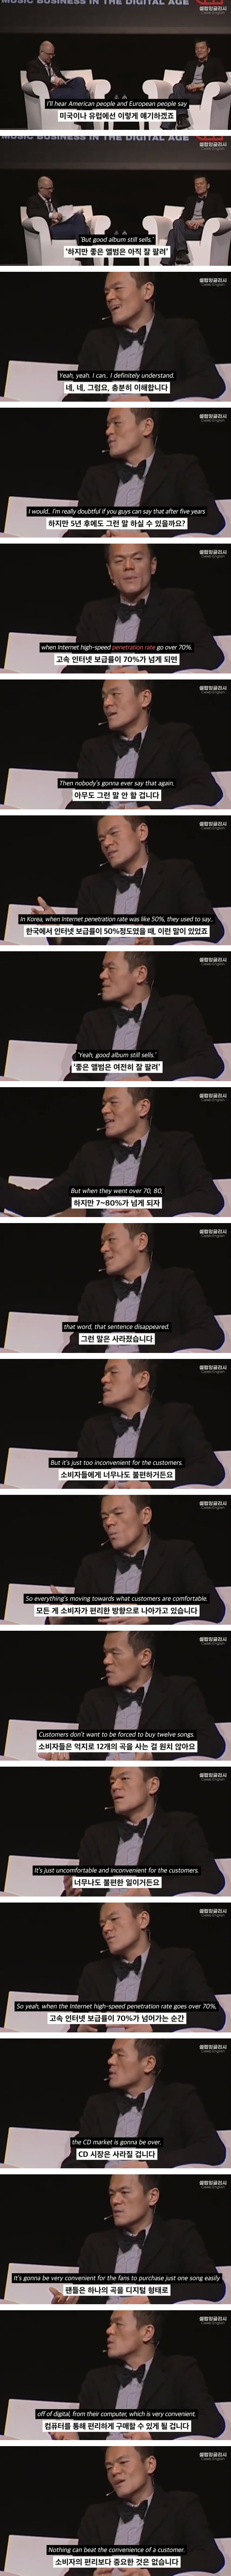 박진영 : 우린 음악을 만들지 않습니다 - 꾸르